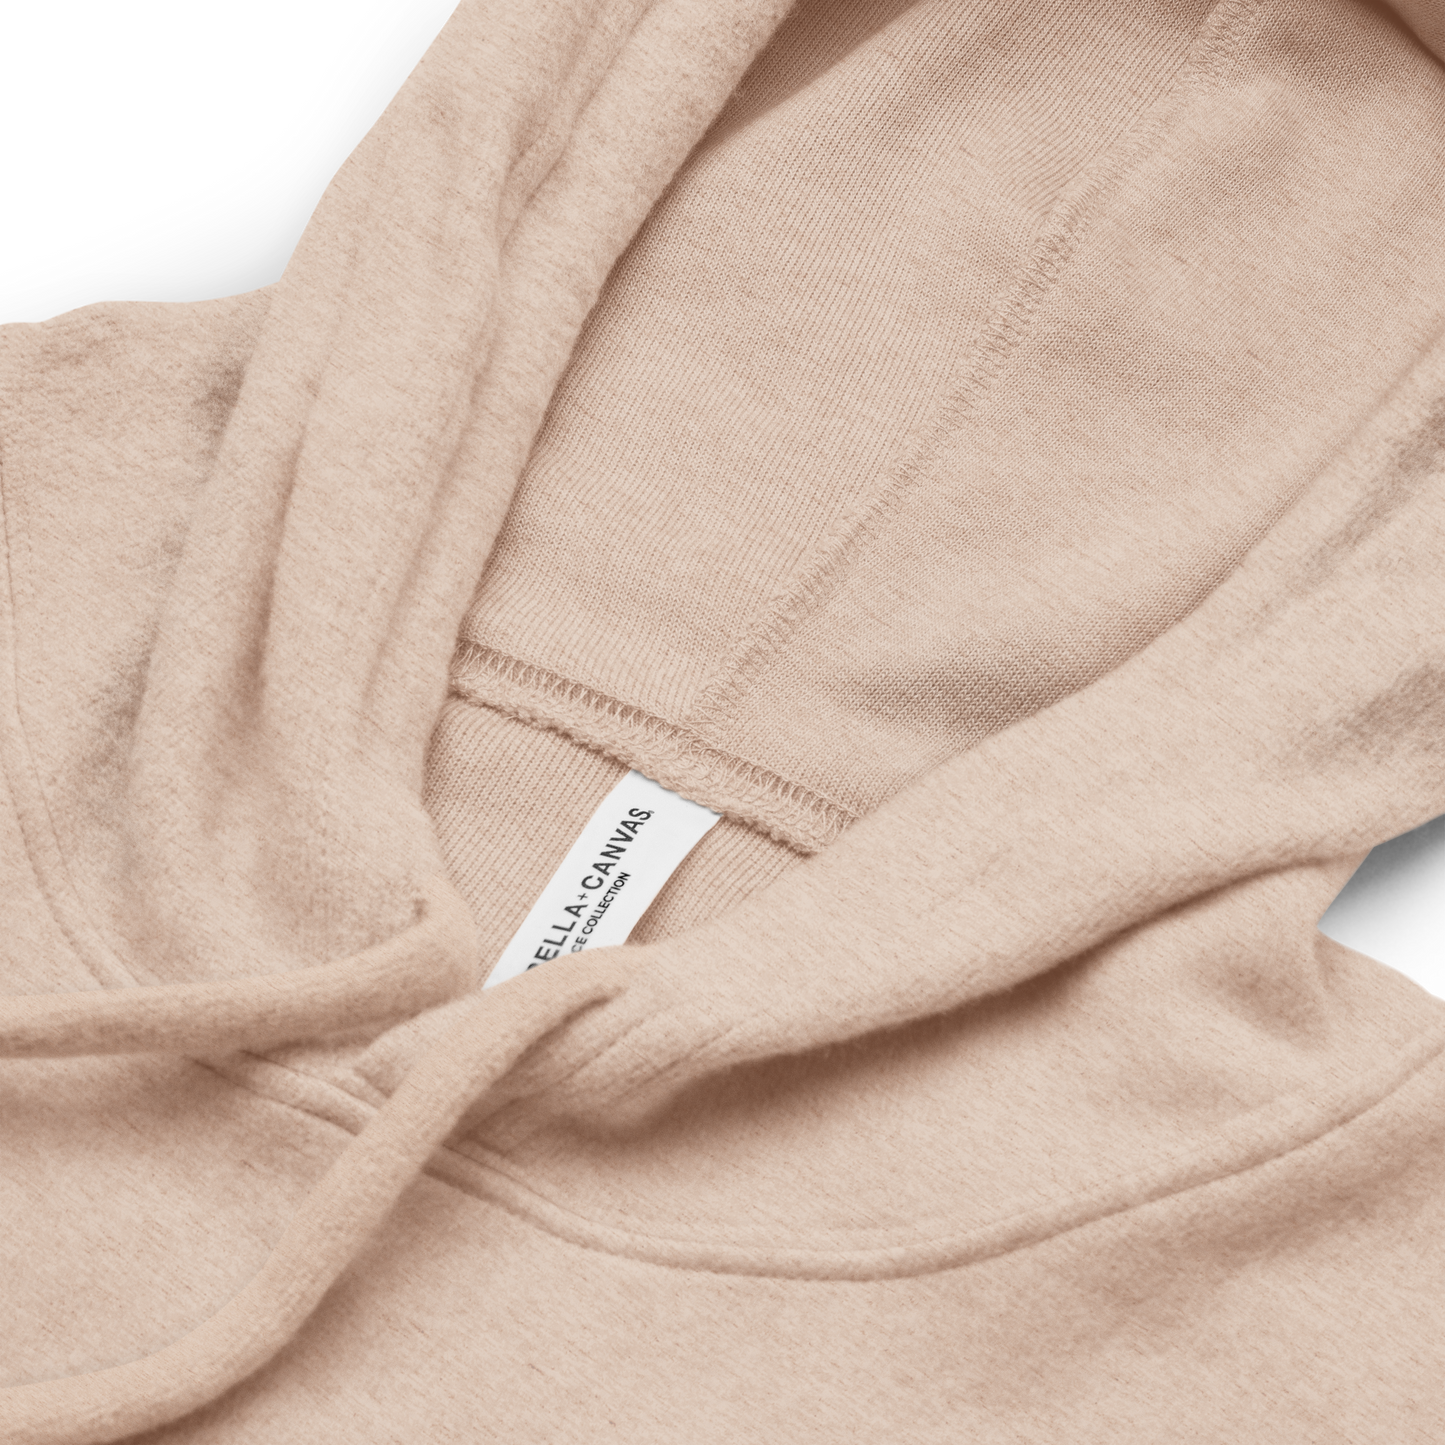 Soleyl Plain - Unisex sueded fleece hoodie